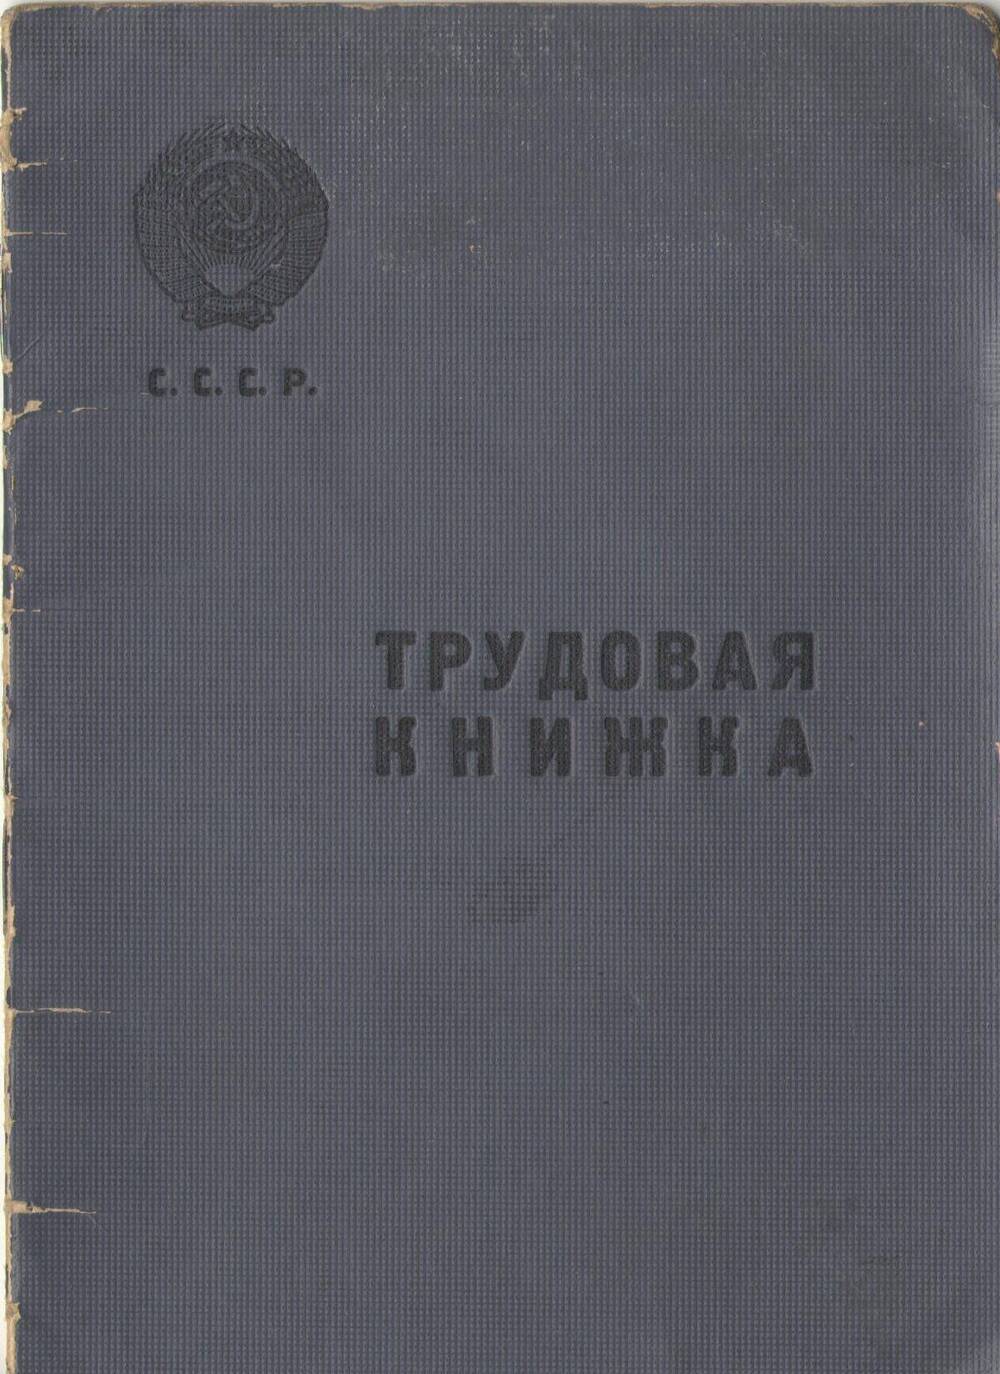 Книжка трудовая Белозеровой Тамары Филимоновны 1936 года рождения. Дата заполнения книжки 26 марта 1954 года